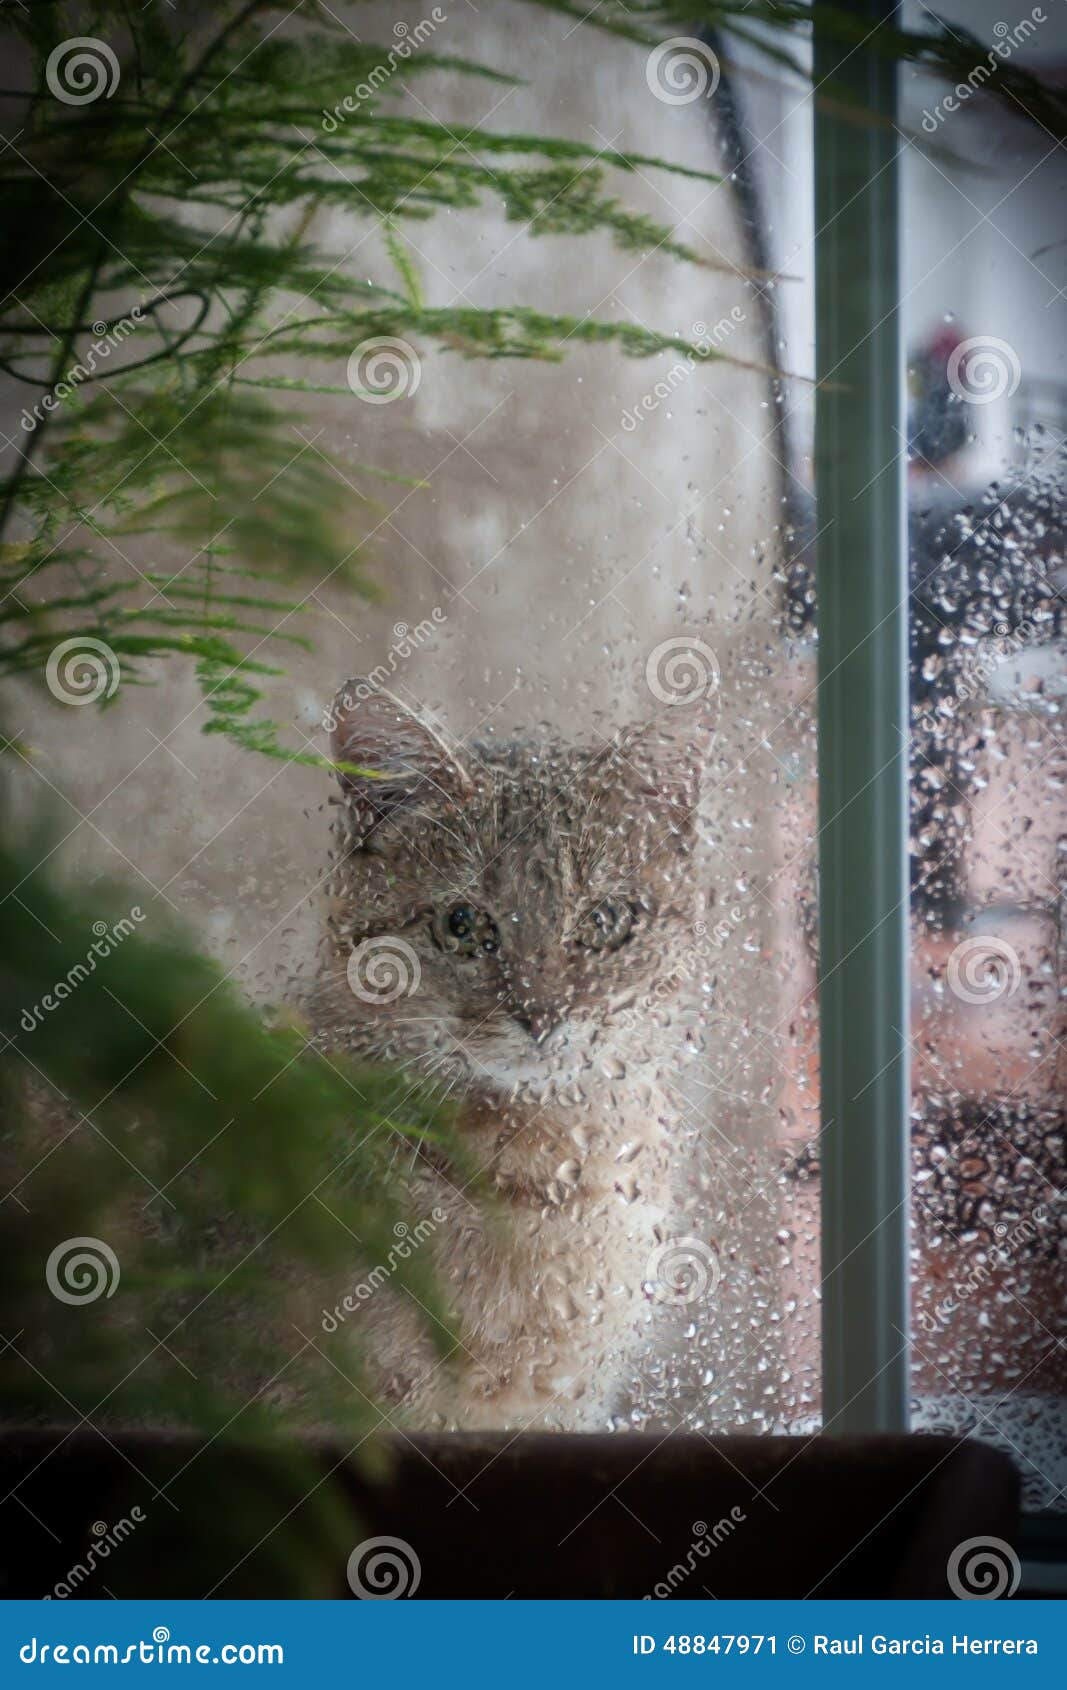 「かわいすぎてニヤけた」「優しい世界」 雨を観察する子猫が話題に！ – grape [グレイプ]